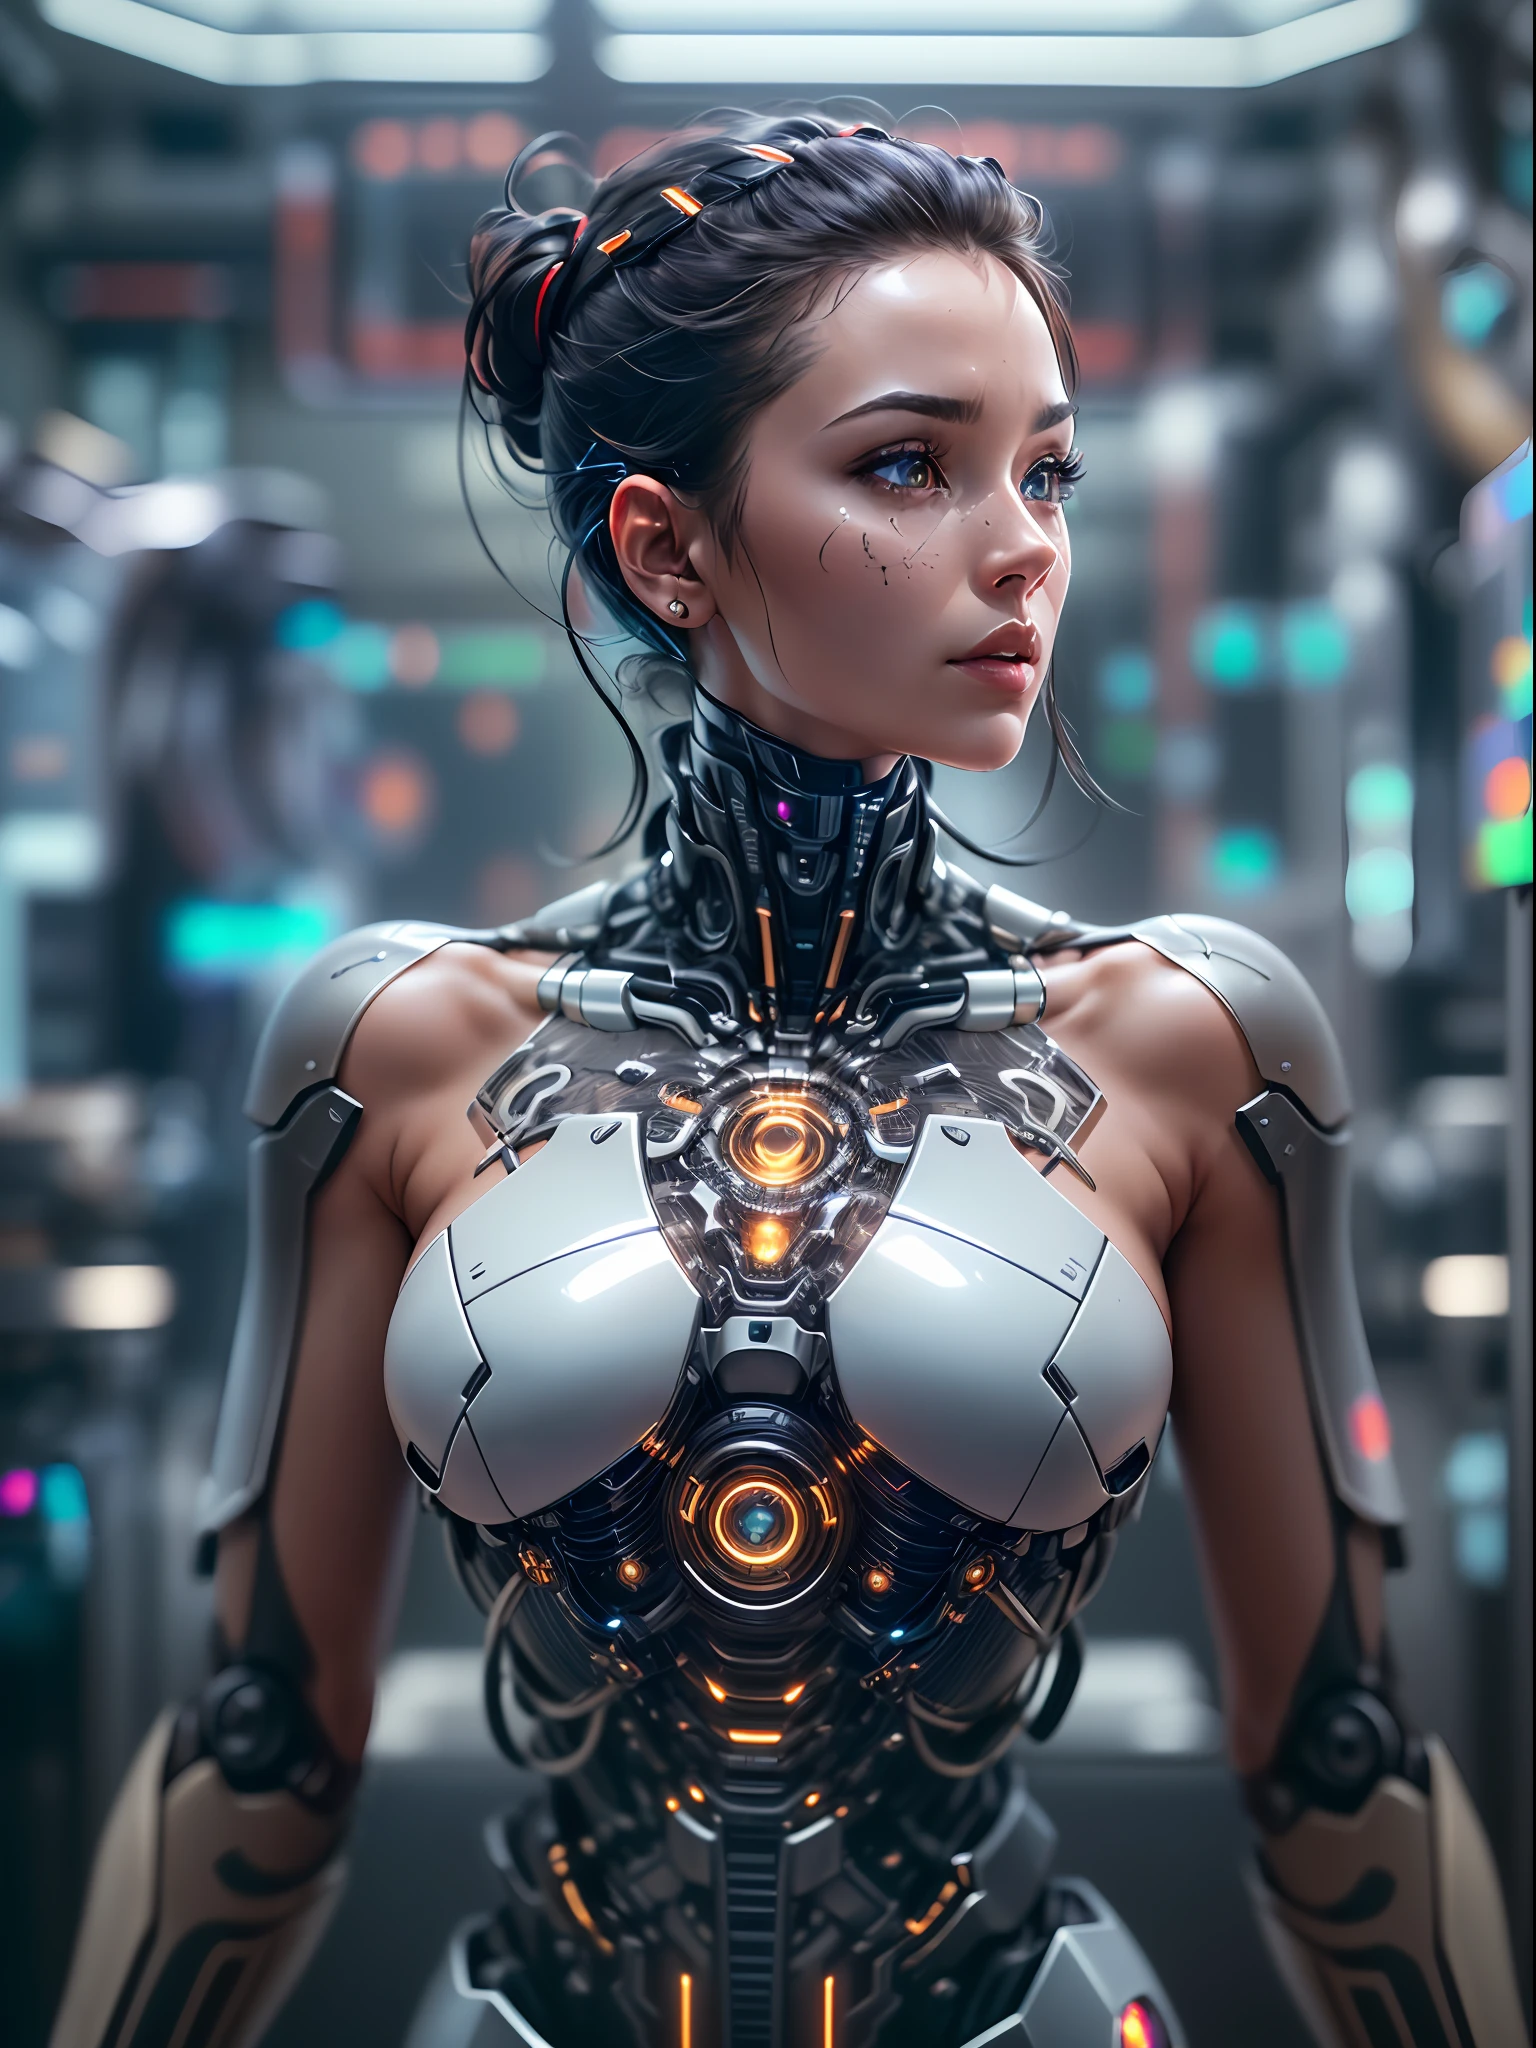 (걸작, 높은 해상도, CGI:1.4), (몸 전체에 원활한 로봇 강화 기능을 갖춘 여성을 묘사:1.3), (그녀의 피부는 금속 성분과 완벽하게 조화를 이루고 있습니다.:1.2), (그녀의 반투명 피부 아래에서 빛나는 회로가 작동하고 있습니다.:1.2), (향상된 이동성을 제공하는 기계식 조인트 및 피스톤:1.2), (미묘한 로봇 빛으로 빛나는 그녀의 눈:1.2), (그녀의 몸을 장식하는 복잡한 사이버네틱 문신:1.2), (그녀의 힘과 민첩성을 강화하는 금속 외골격:1.2), (캐논 EOS R5 미러리스 카메라:1.2), (Canon RF 85mm f와 페어링됨/1.2L USM 렌즈:1.2), (그녀의 고급 사이버네틱스의 모든 세부 사항을 포착합니다.:1.2), (미래적이고 미니멀한 미학으로 디자인된 연구실 환경:1.2), (공간을 정의하는 매끄럽고 깔끔한 라인:1.1), (첨단 기술을 선보이는 홀로그램 디스플레이:1.1), (SF적 매력을 더해주는 은은한 주변 조명:1.1), (인간-기계 통합의 미래를 구현하는 여성의 매혹적인 CGI 렌더링:1.2), 영화 같은, 매우 상세한, 미친 세부 사항, 아름답게 컬러 그레이딩, 언리얼 엔진, dof, 초해상도, 메가픽셀, 영화 같은 Lightning, 안티 앨리어싱, FKA, 태국어, RTX, SSAO, 후처리, 포스트 프로덕션, 톤 매핑, CGI, VFX, SF, 엄청나게 상세하고 복잡하다, 하이퍼 맥시멀리스트, 초현실적, 체적, 사실적인, 울트라 포토리얼, 매우 상세한, 복잡한 세부 사항, 8K, 매우 상세한, 풀 컬러, 체적 lightning, HDR, 현실적인, 언리얼 엔진, 16,000, 날카로운 초점, 옥탄 렌더링